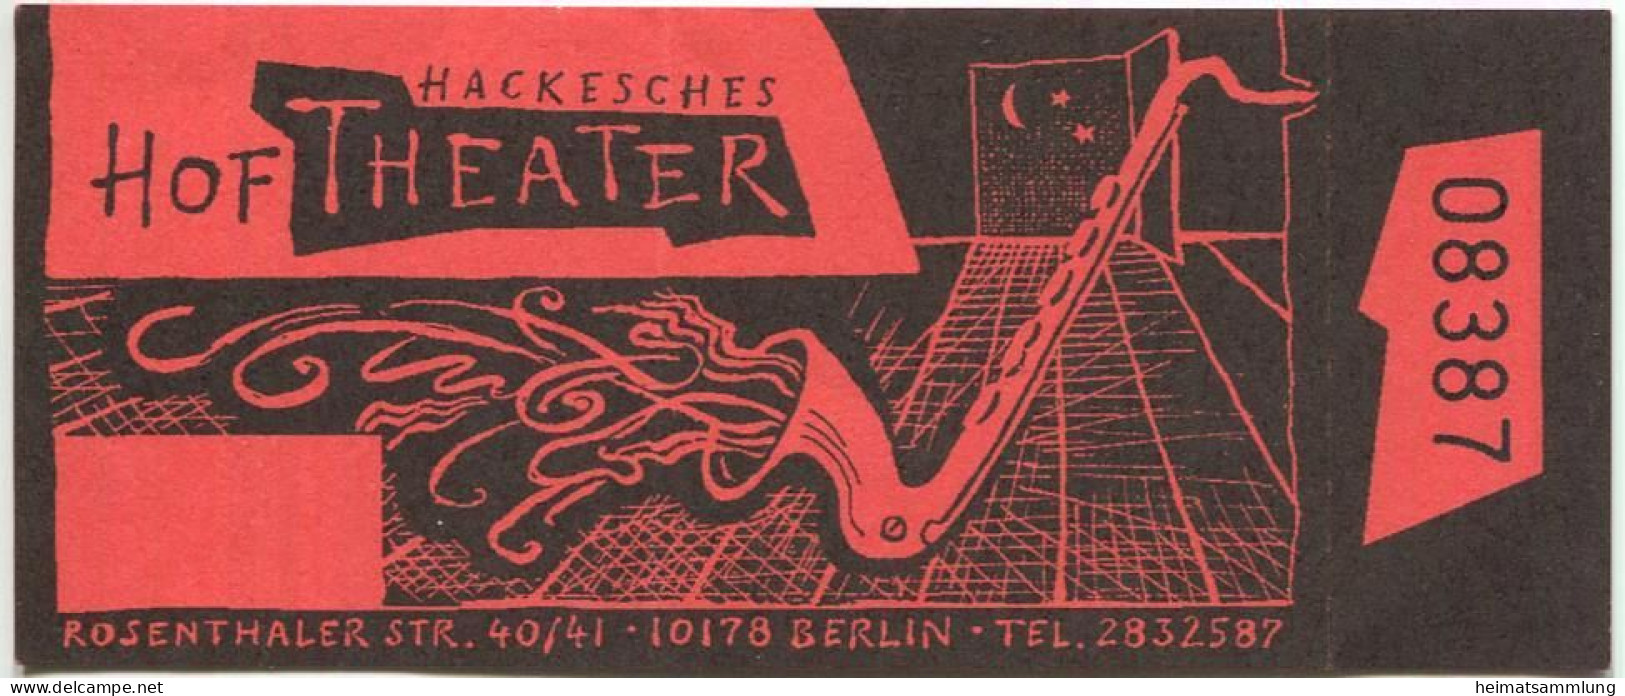 Deutschland - Berlin - Hackesches Hof Theater - Rosenthaler Str. 40/41 - Eintrittskarte - Biglietti D'ingresso